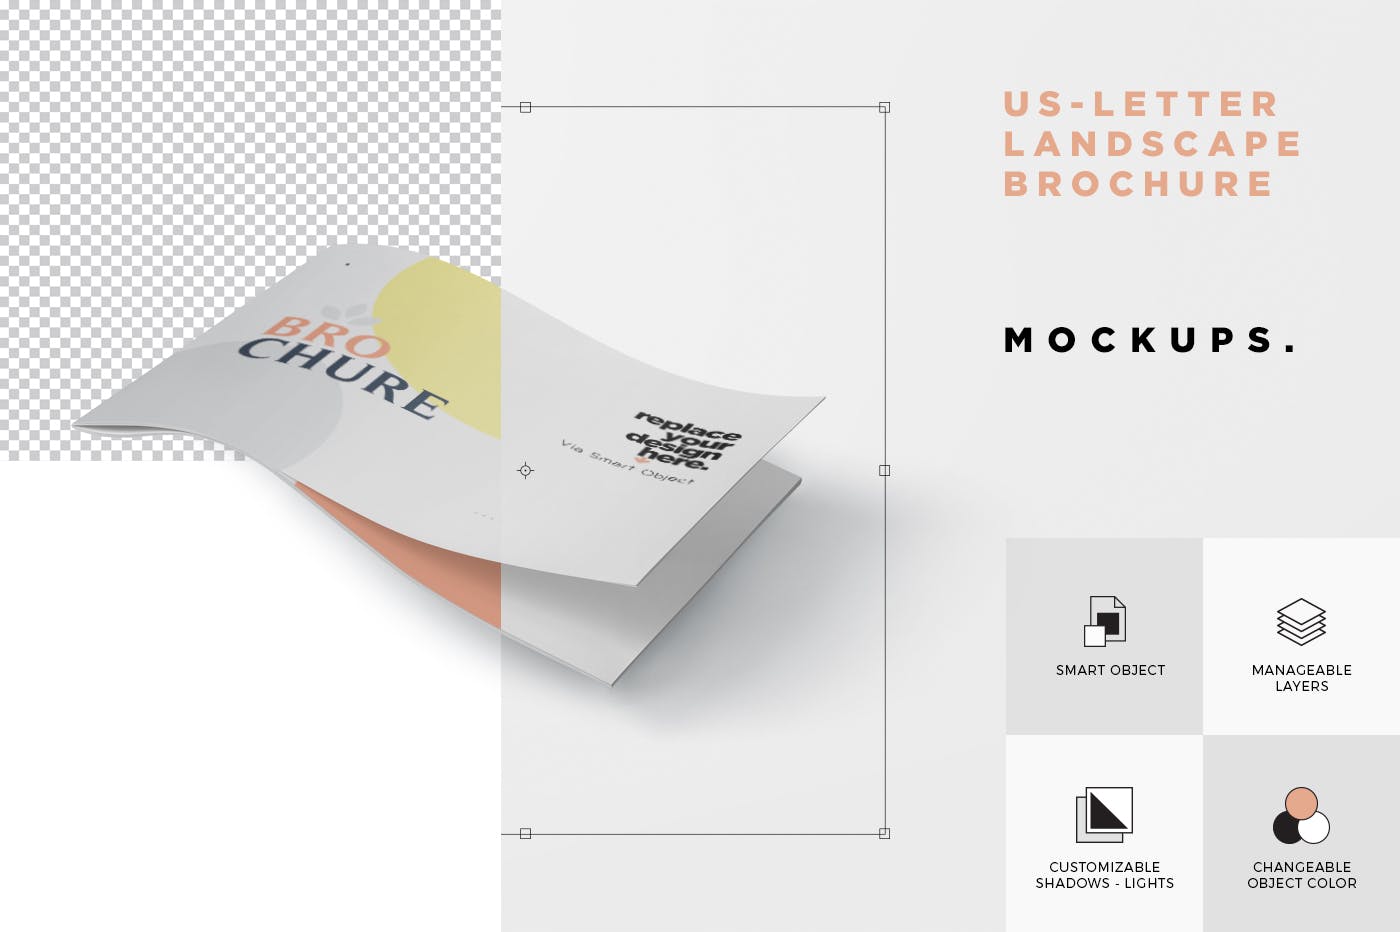 美国信纸尺寸横版杂志印刷效果图样机蚂蚁素材精选 US Letter Landscape Brochure – Magazine Mockup set插图(4)